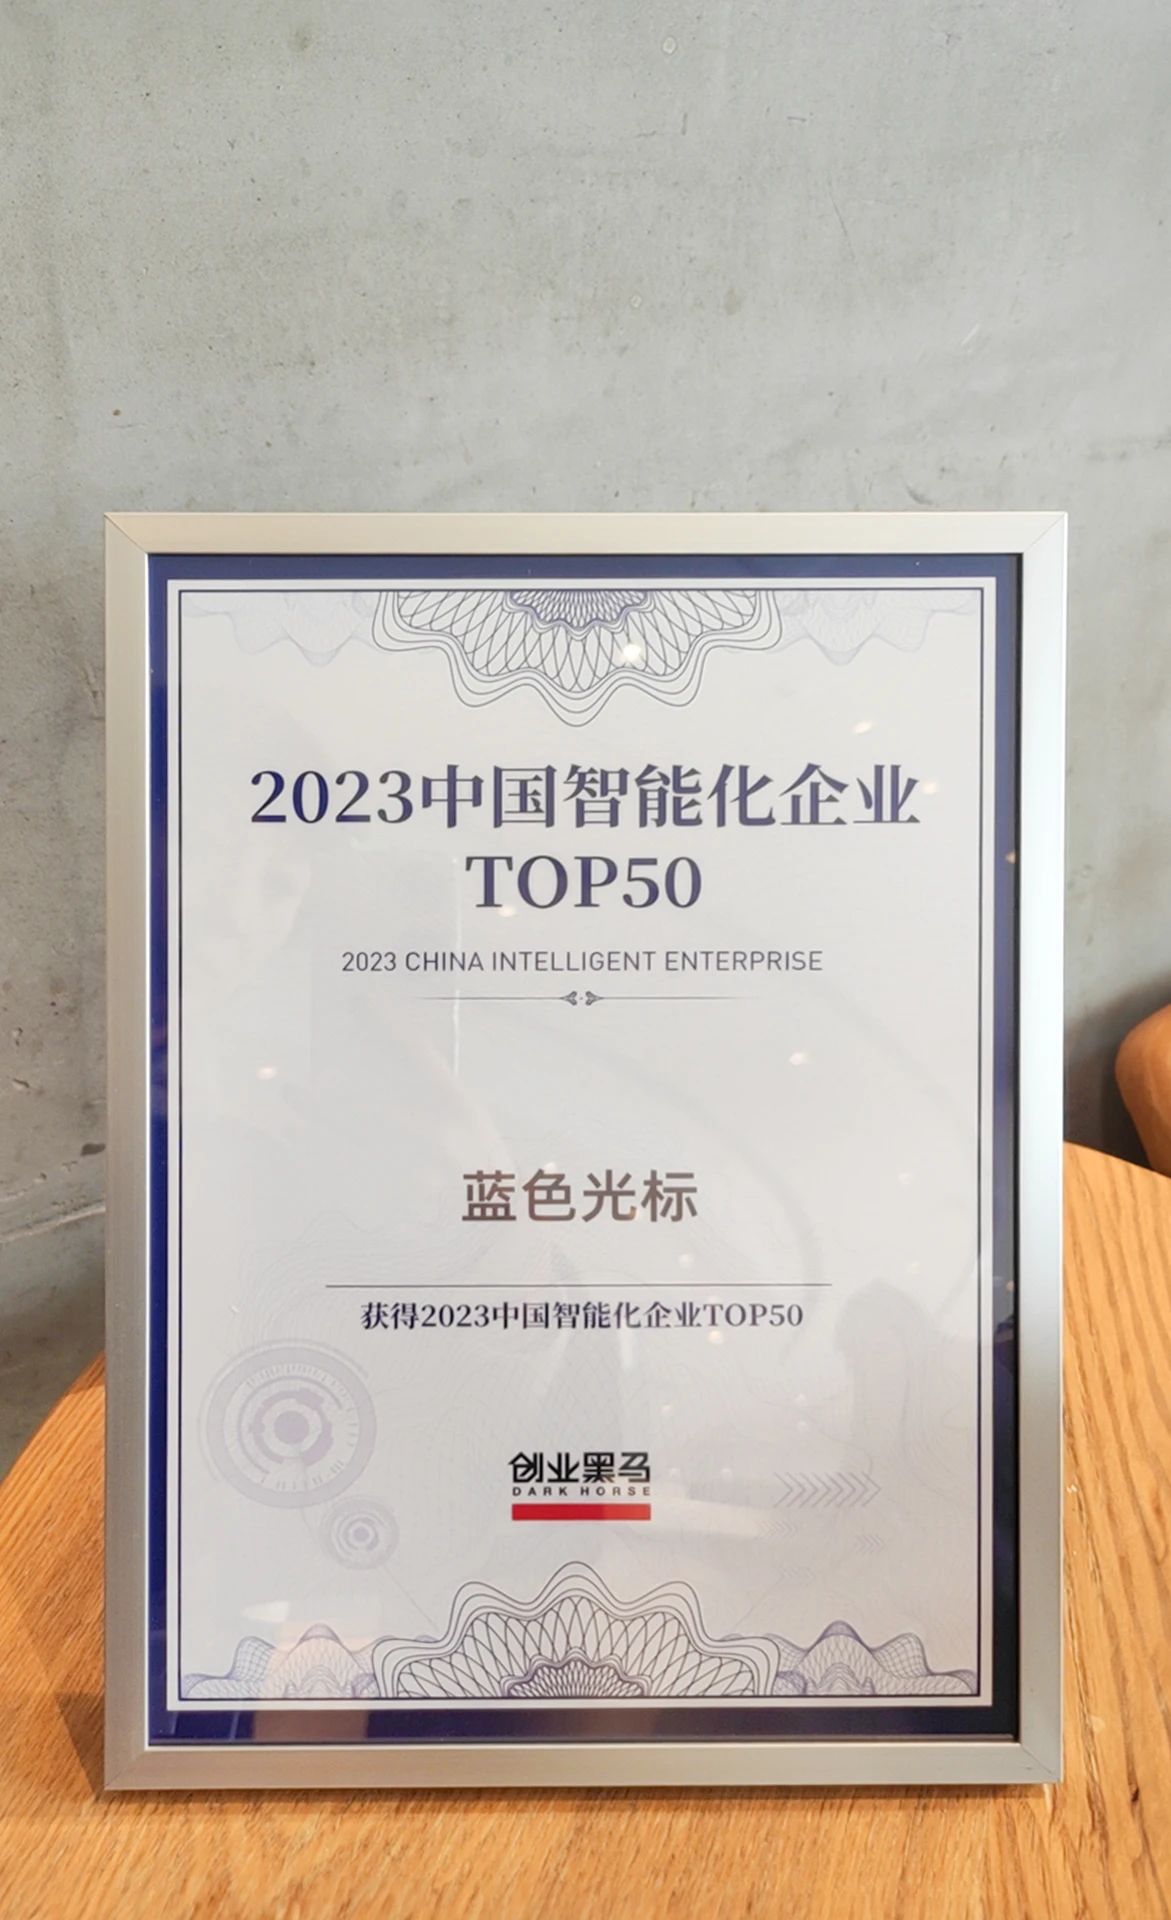 蓝色光标获颁"2023中国智能化企业 TOP50"